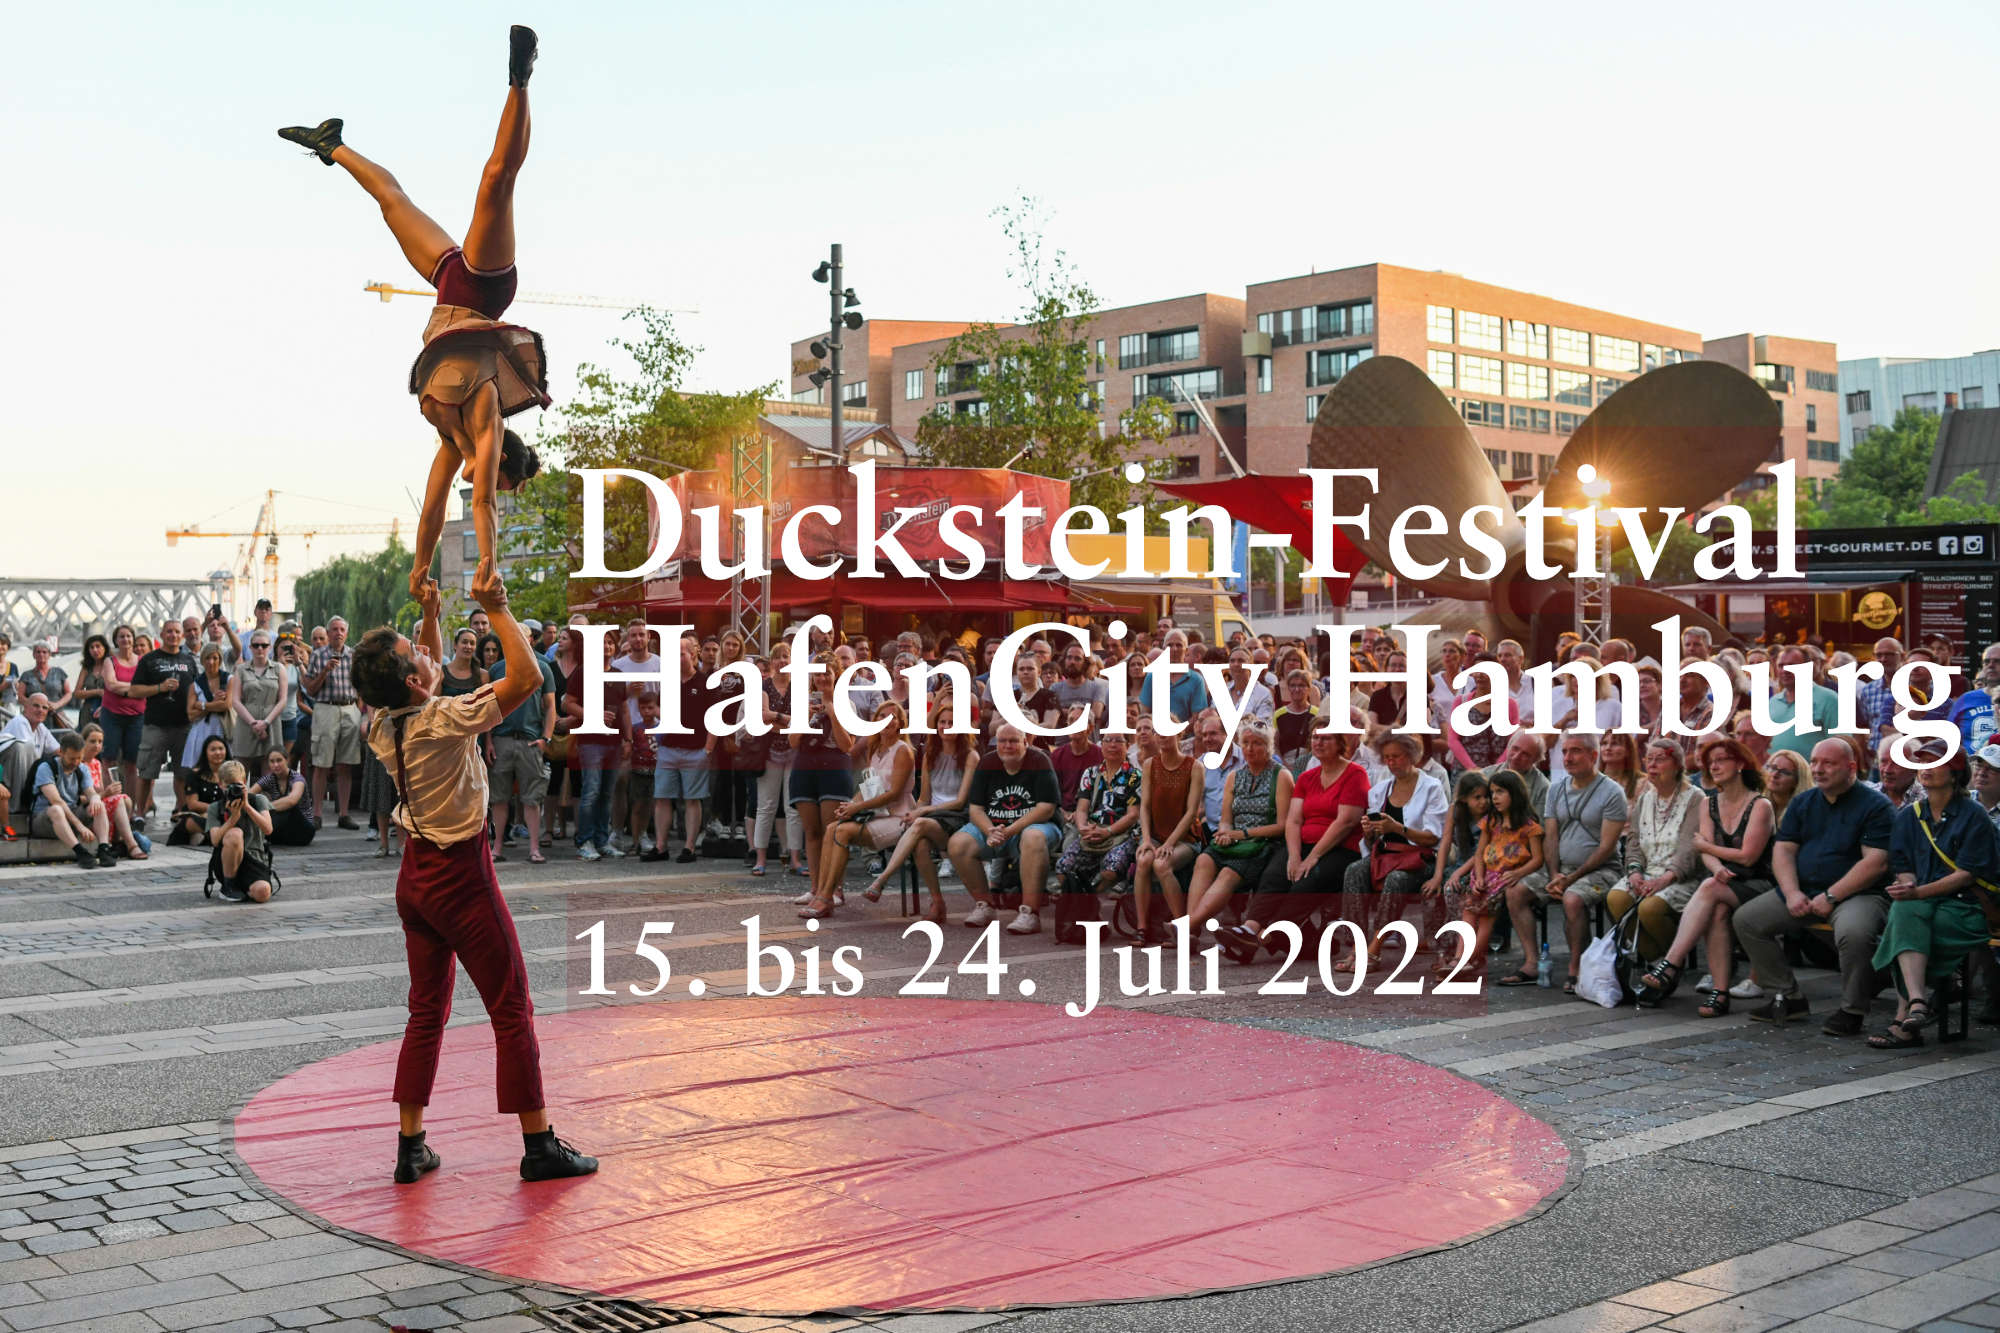 Duckstein-Festival HafenCity Hamburg, News Bild für die Aktuell Seite von Neptunsgeschmeide, (c) bergmanngruppe Foto Thomas Panzau (12), Textbearbeitung Thorsten Blume